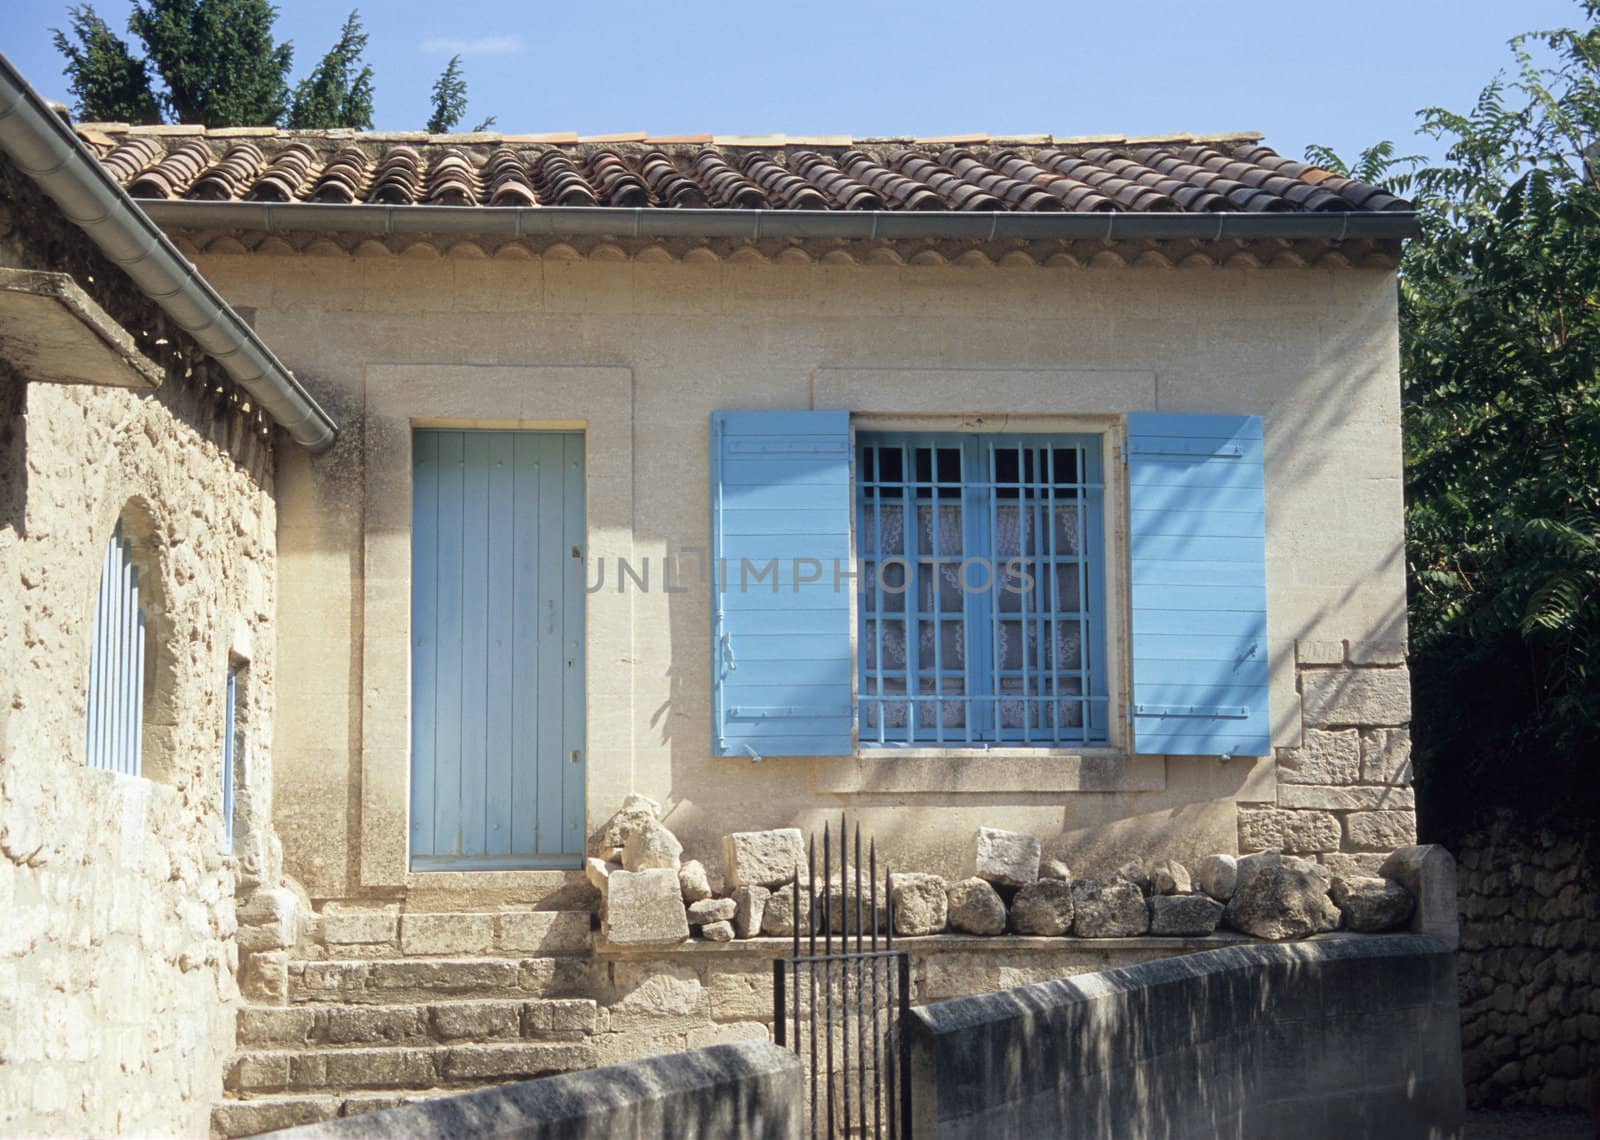 A typical, quaint, rural house in Les Baux de Provence, France.